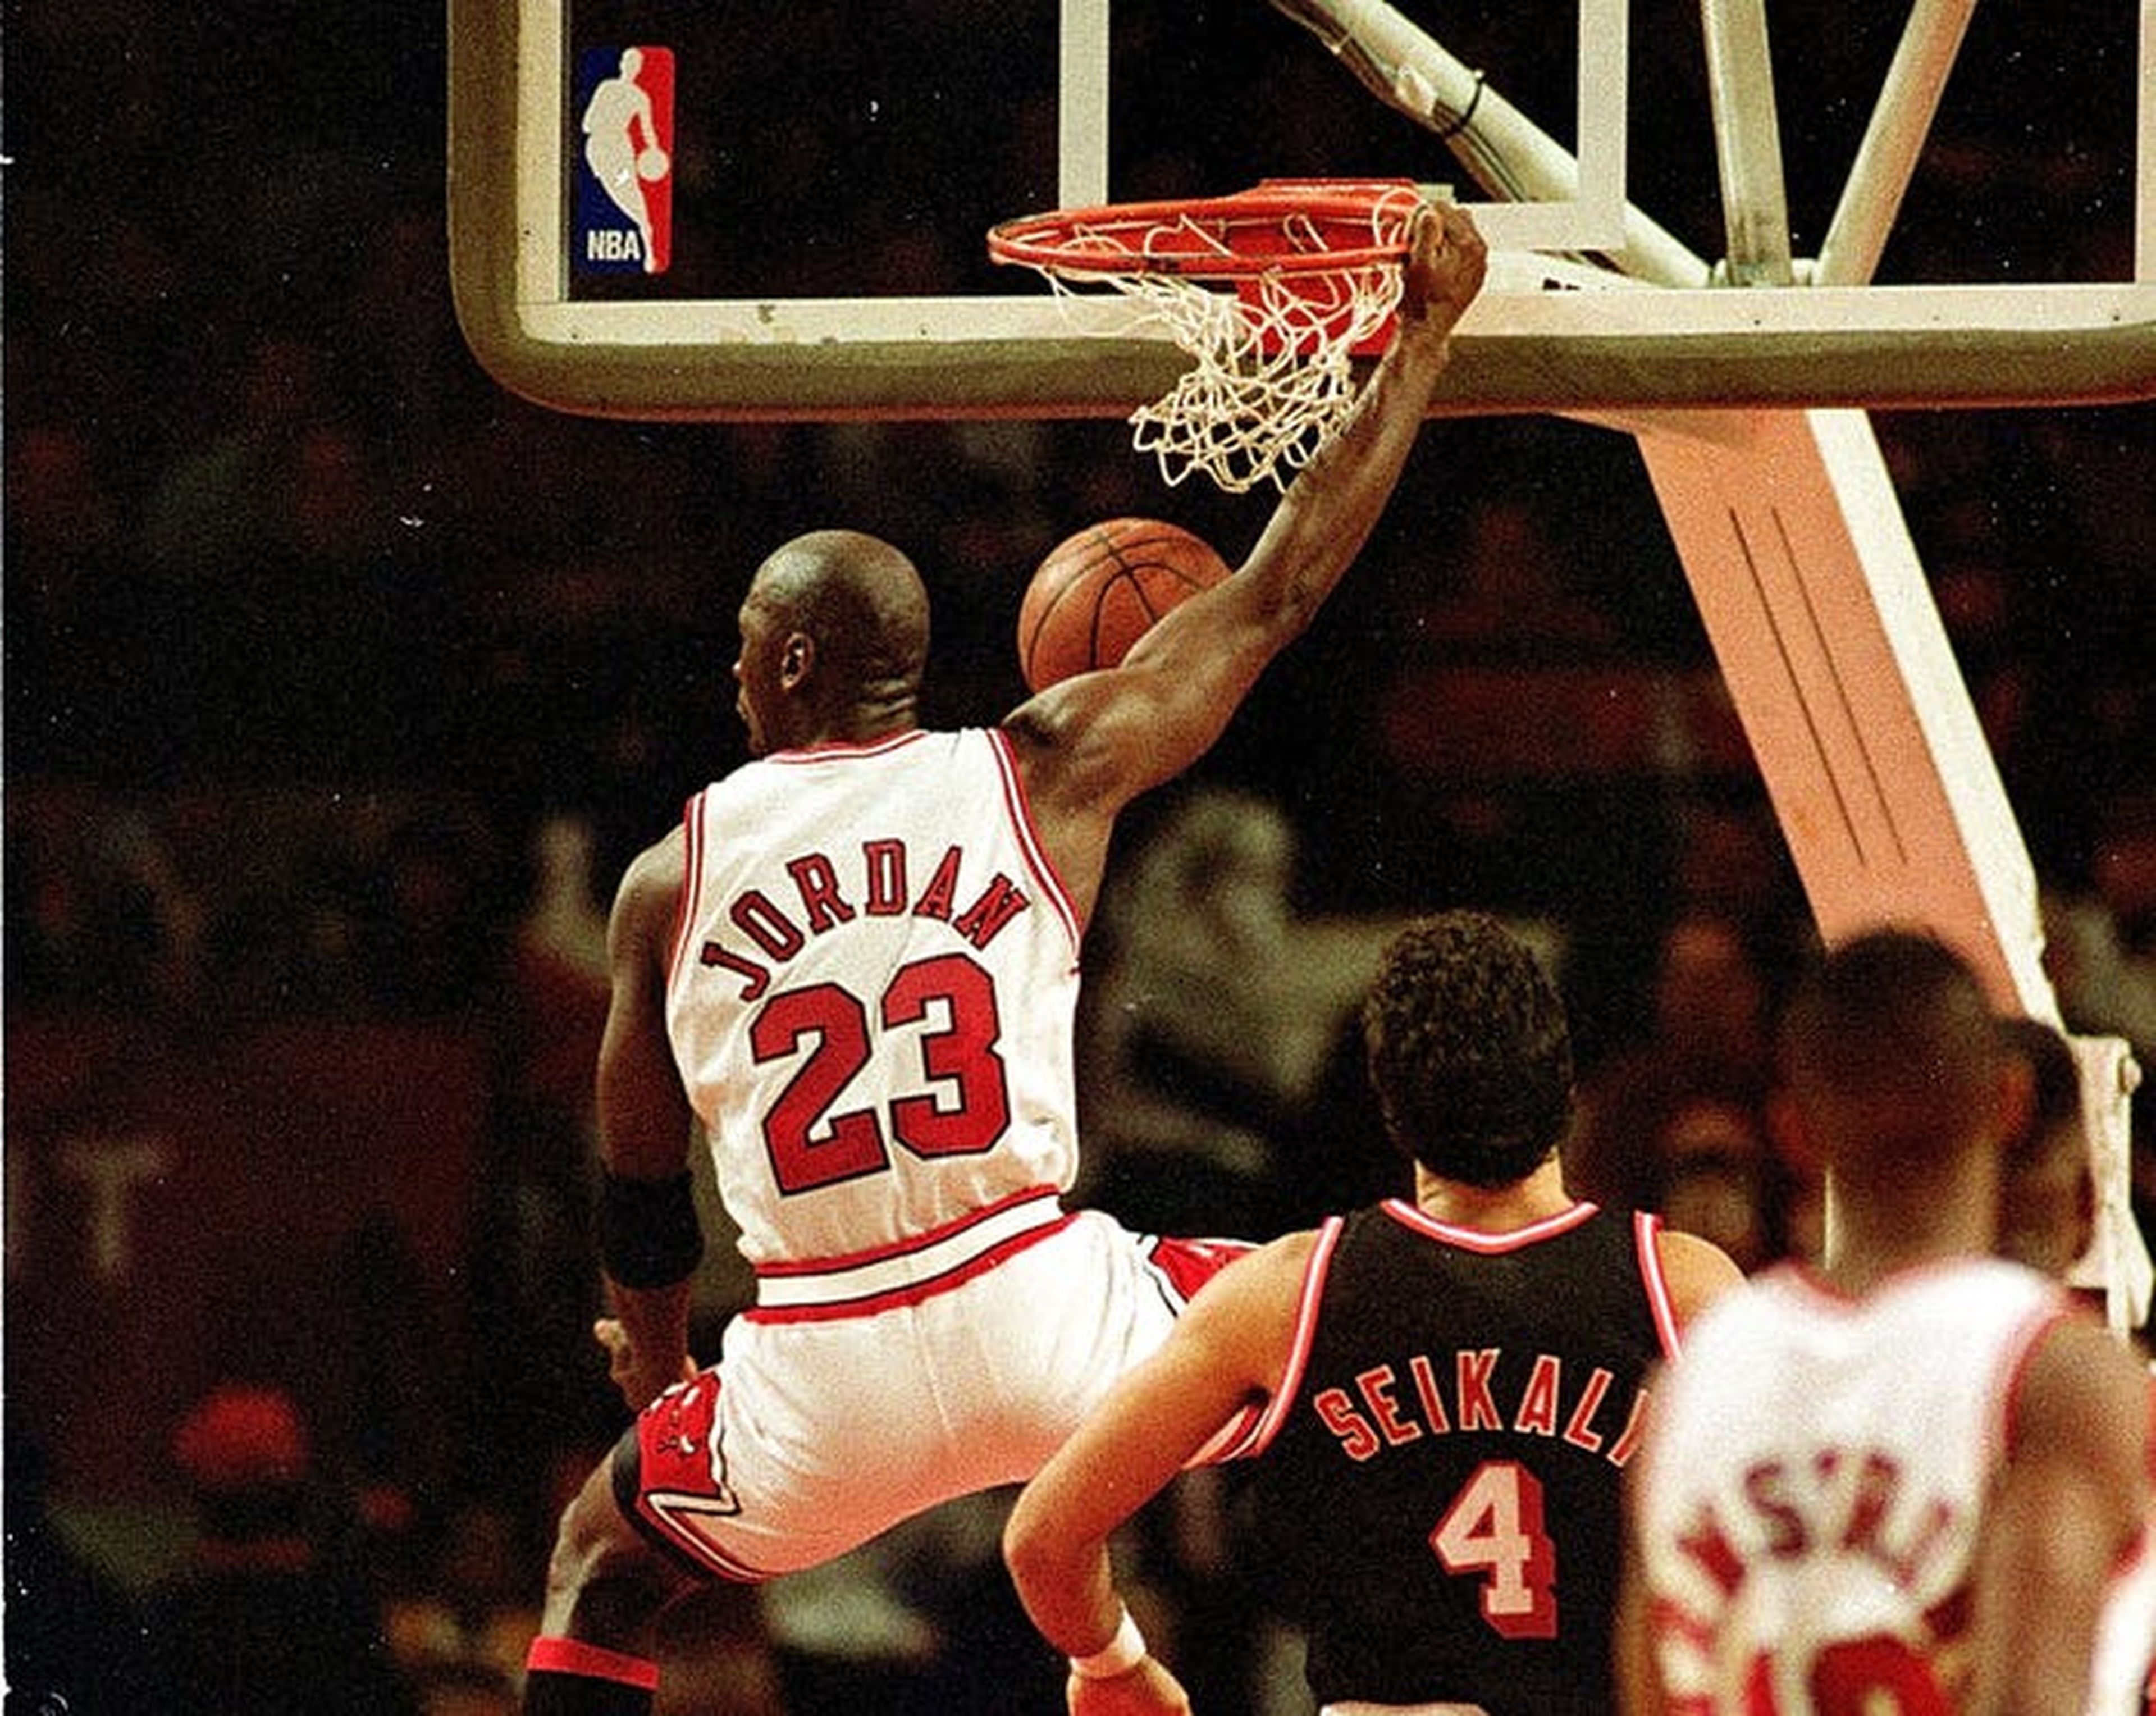 Según publicaciones, Jordan quiso firmar con Adidas en 1984, pero no lo aceptaron porque preferían jugadores de la NBA que midieran por encima de los 2,13 metros.